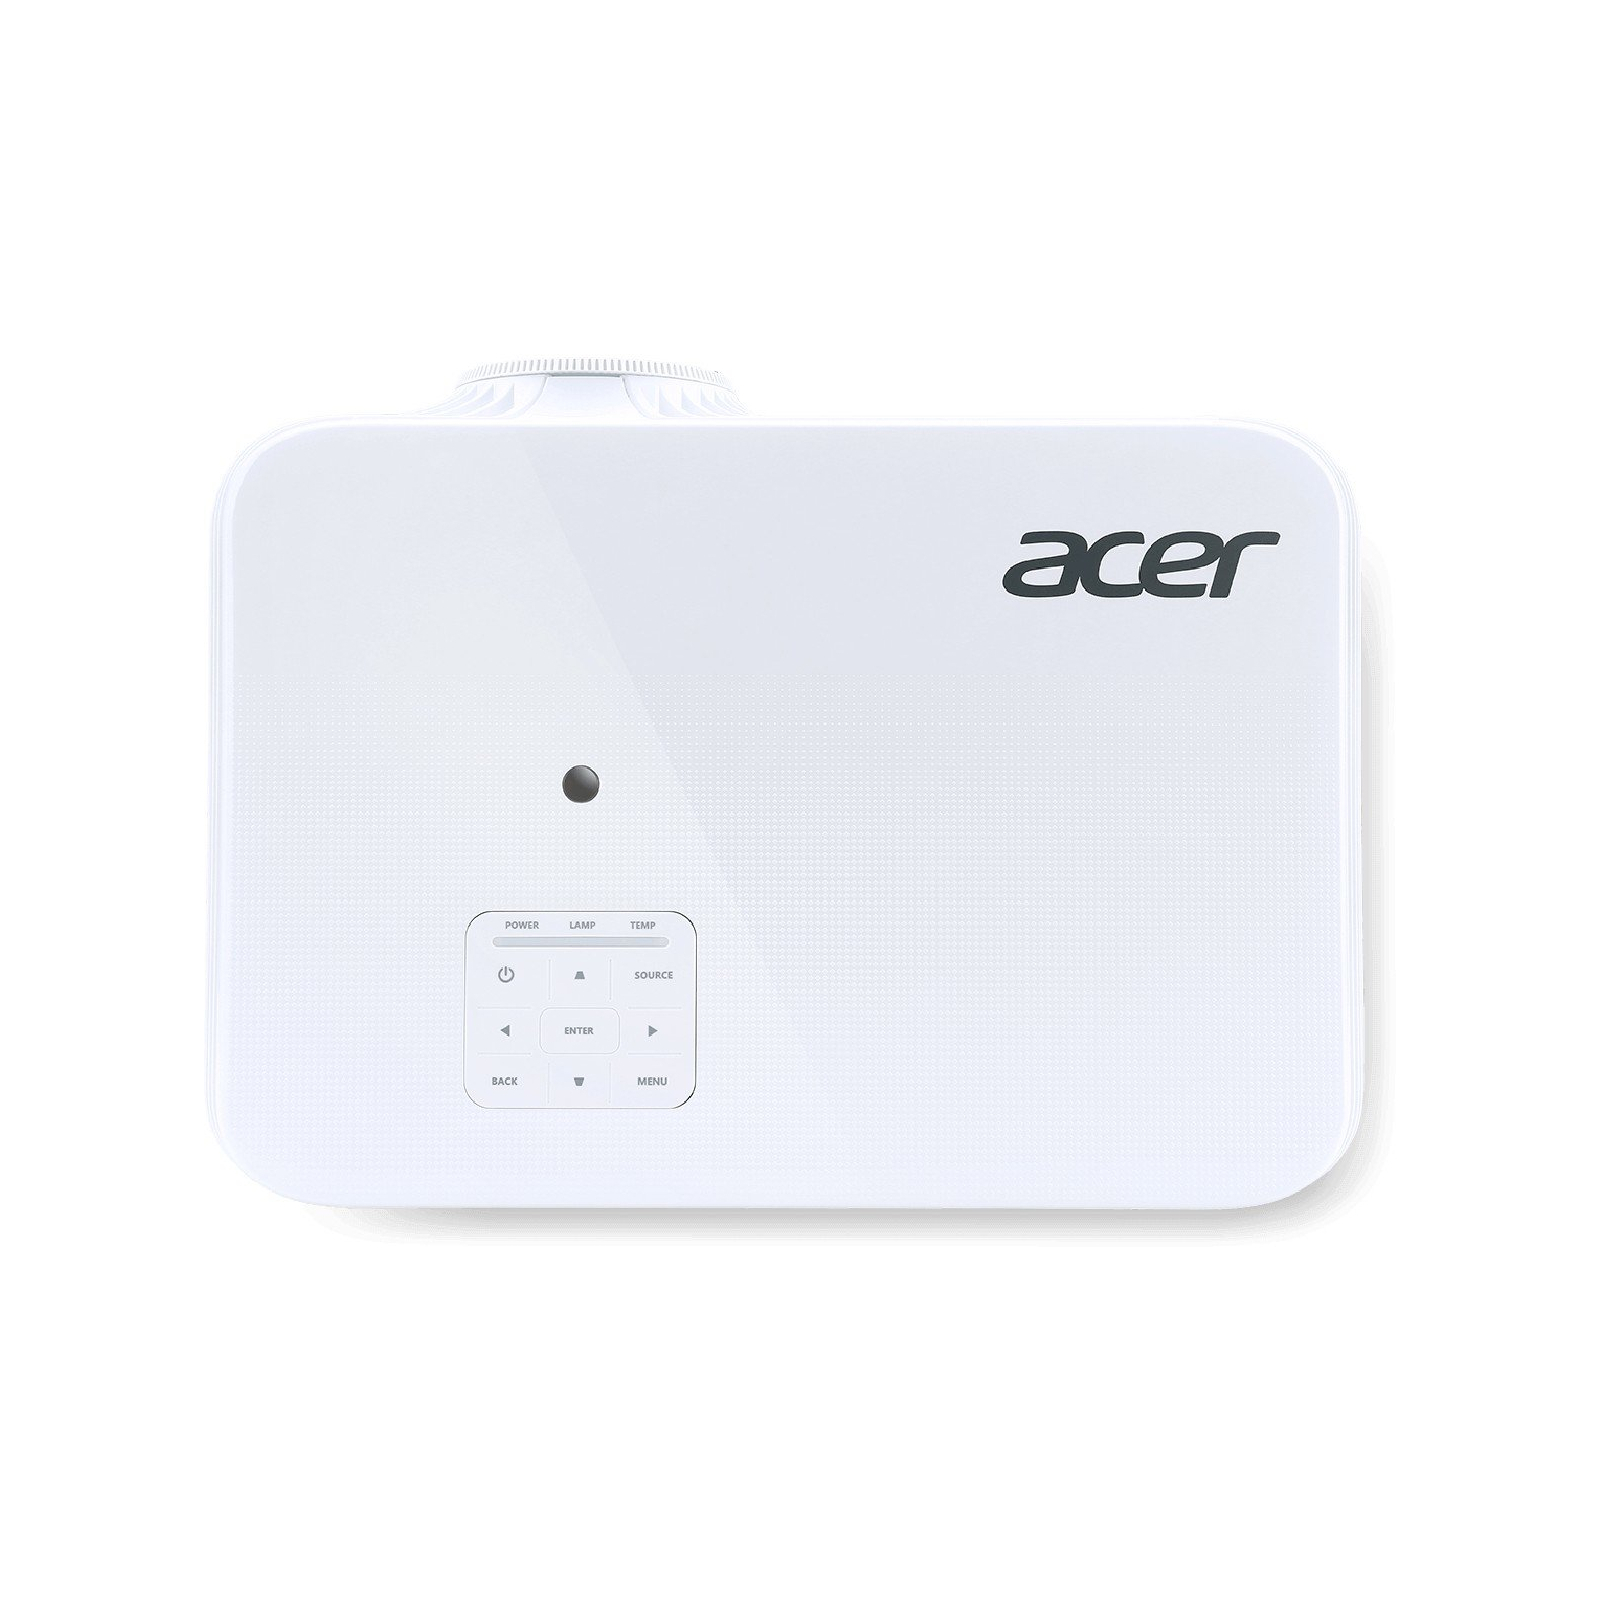 Проектор Acer P5530i (MR.JQN11.001) изображение 5